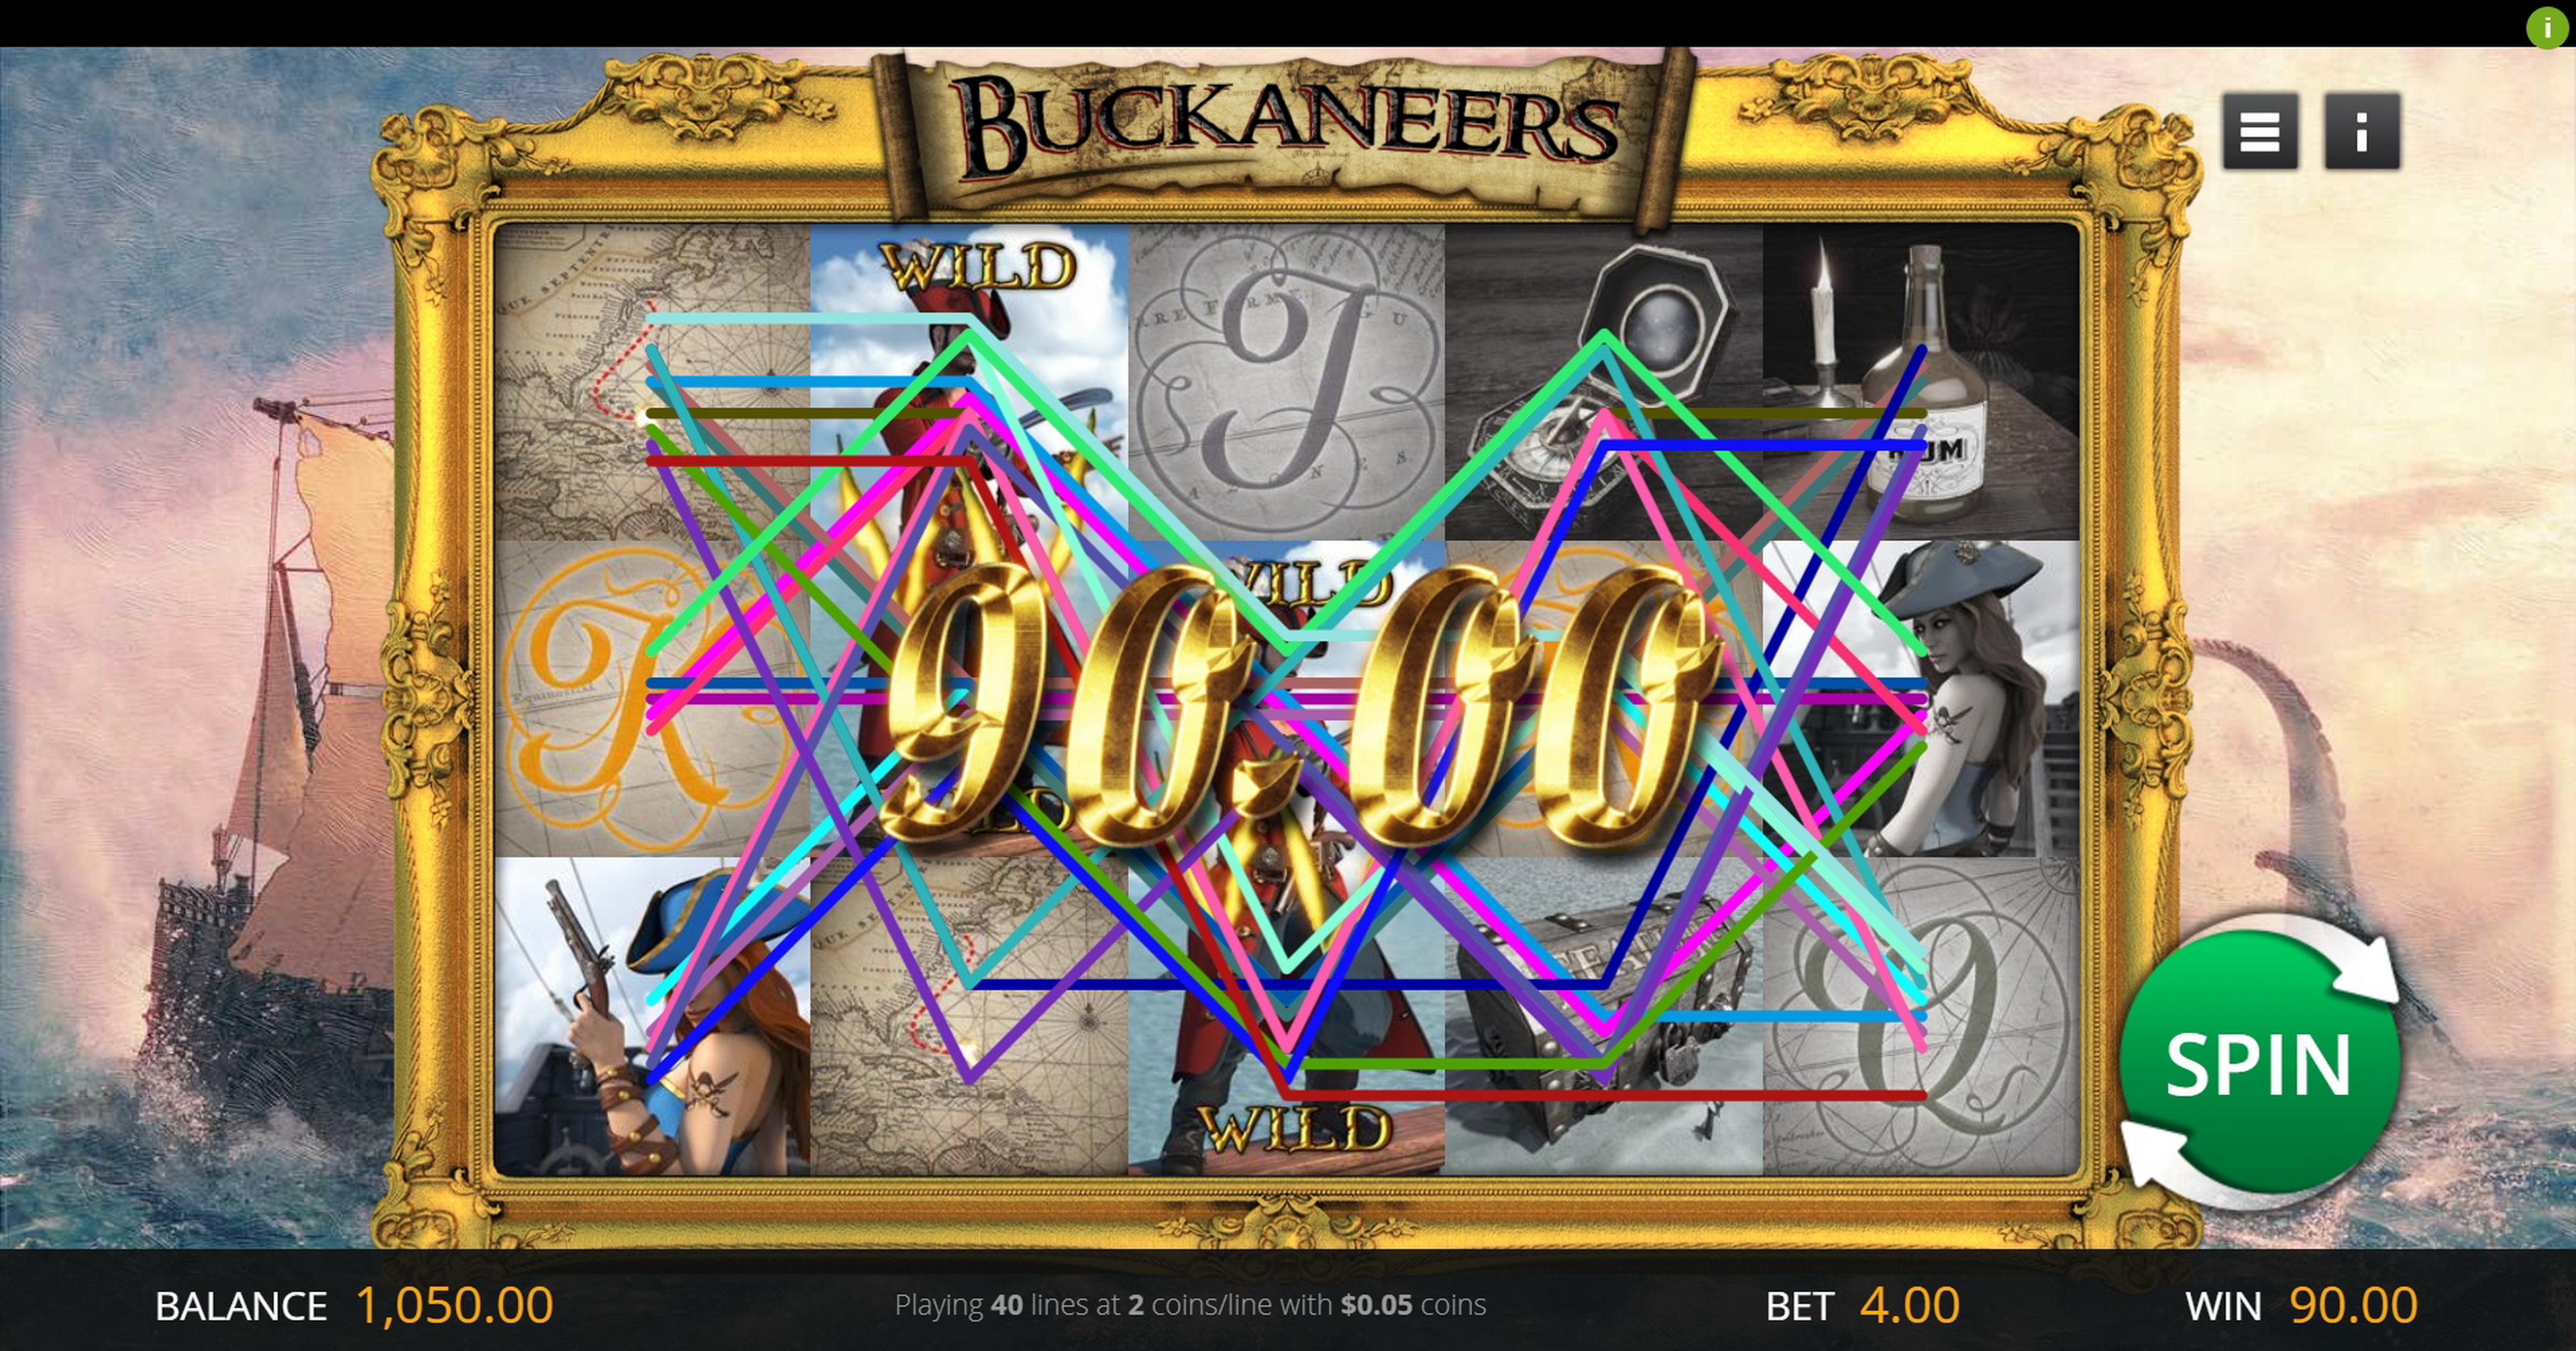 Win Money in Buckaneers Free Slot Game by Genii